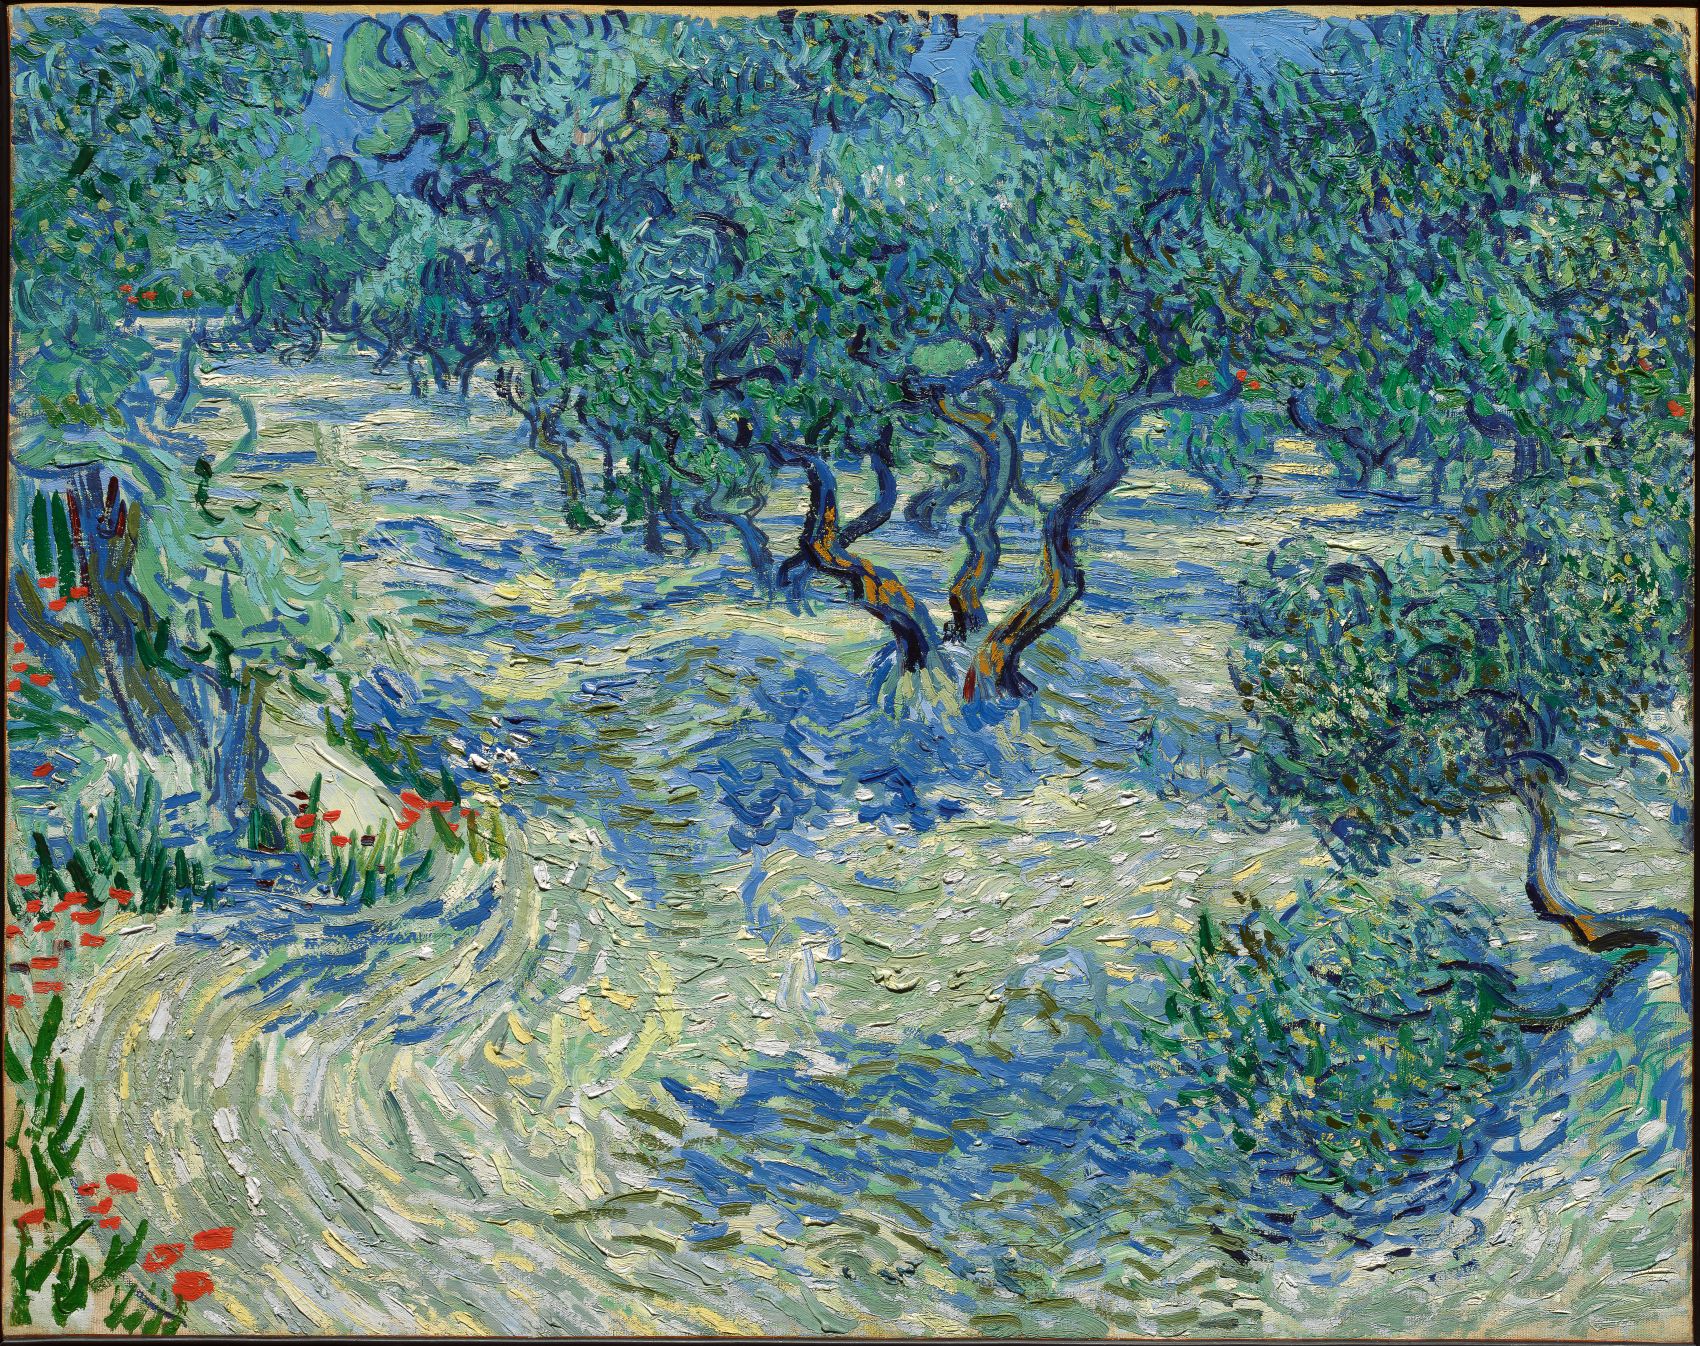 Drzewa oliwkowe by Vincent van Gogh - 1889 - 73,2 × 92,2 cm 